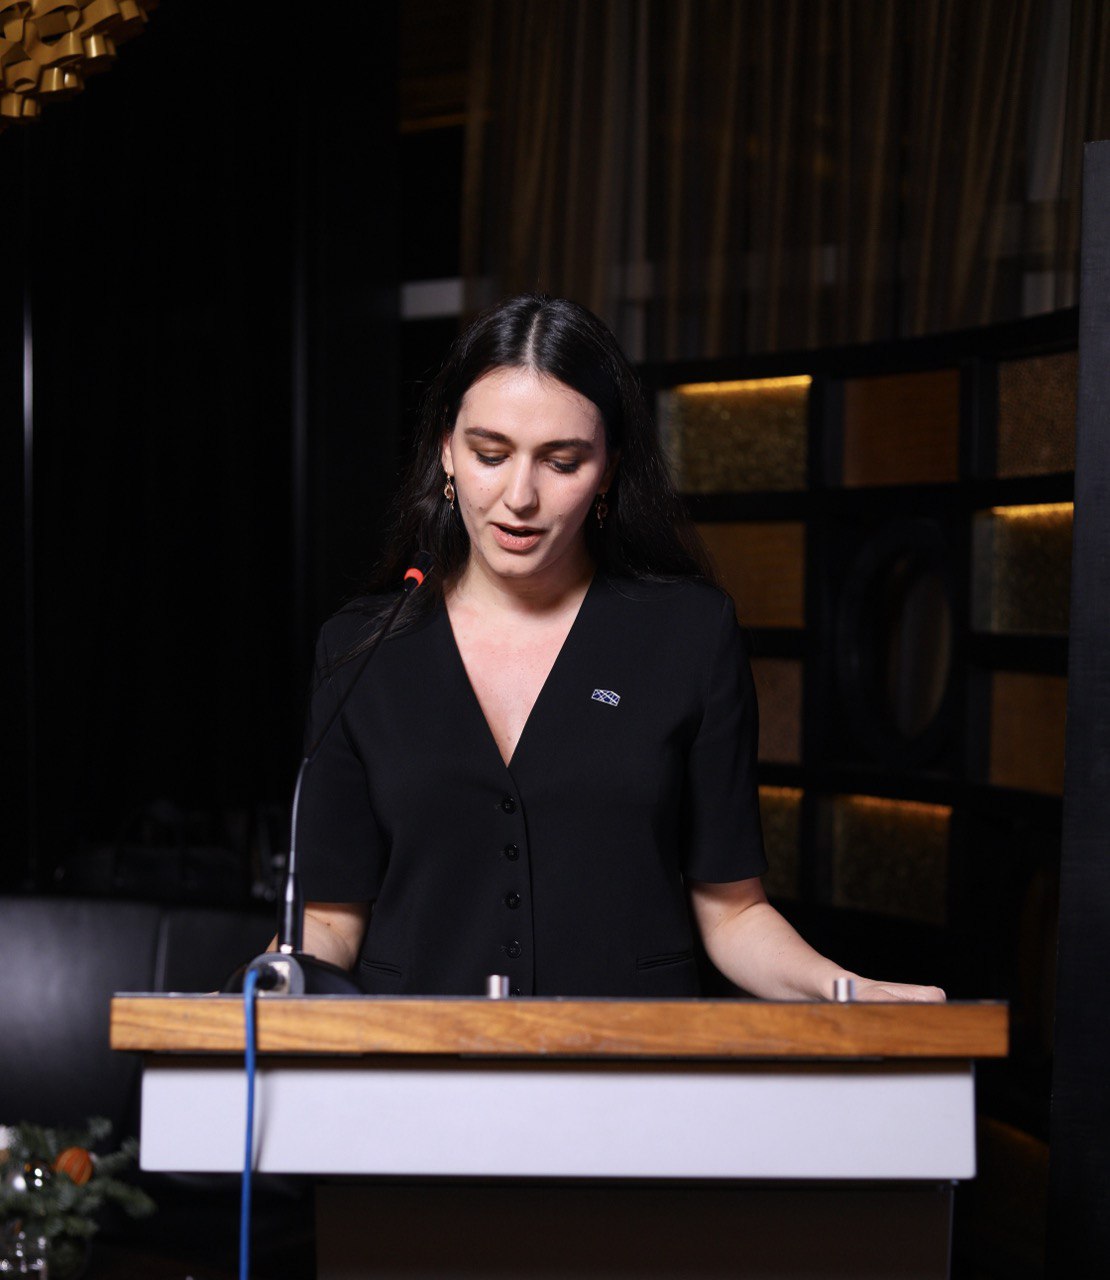 A woman standing at a podium making a speech